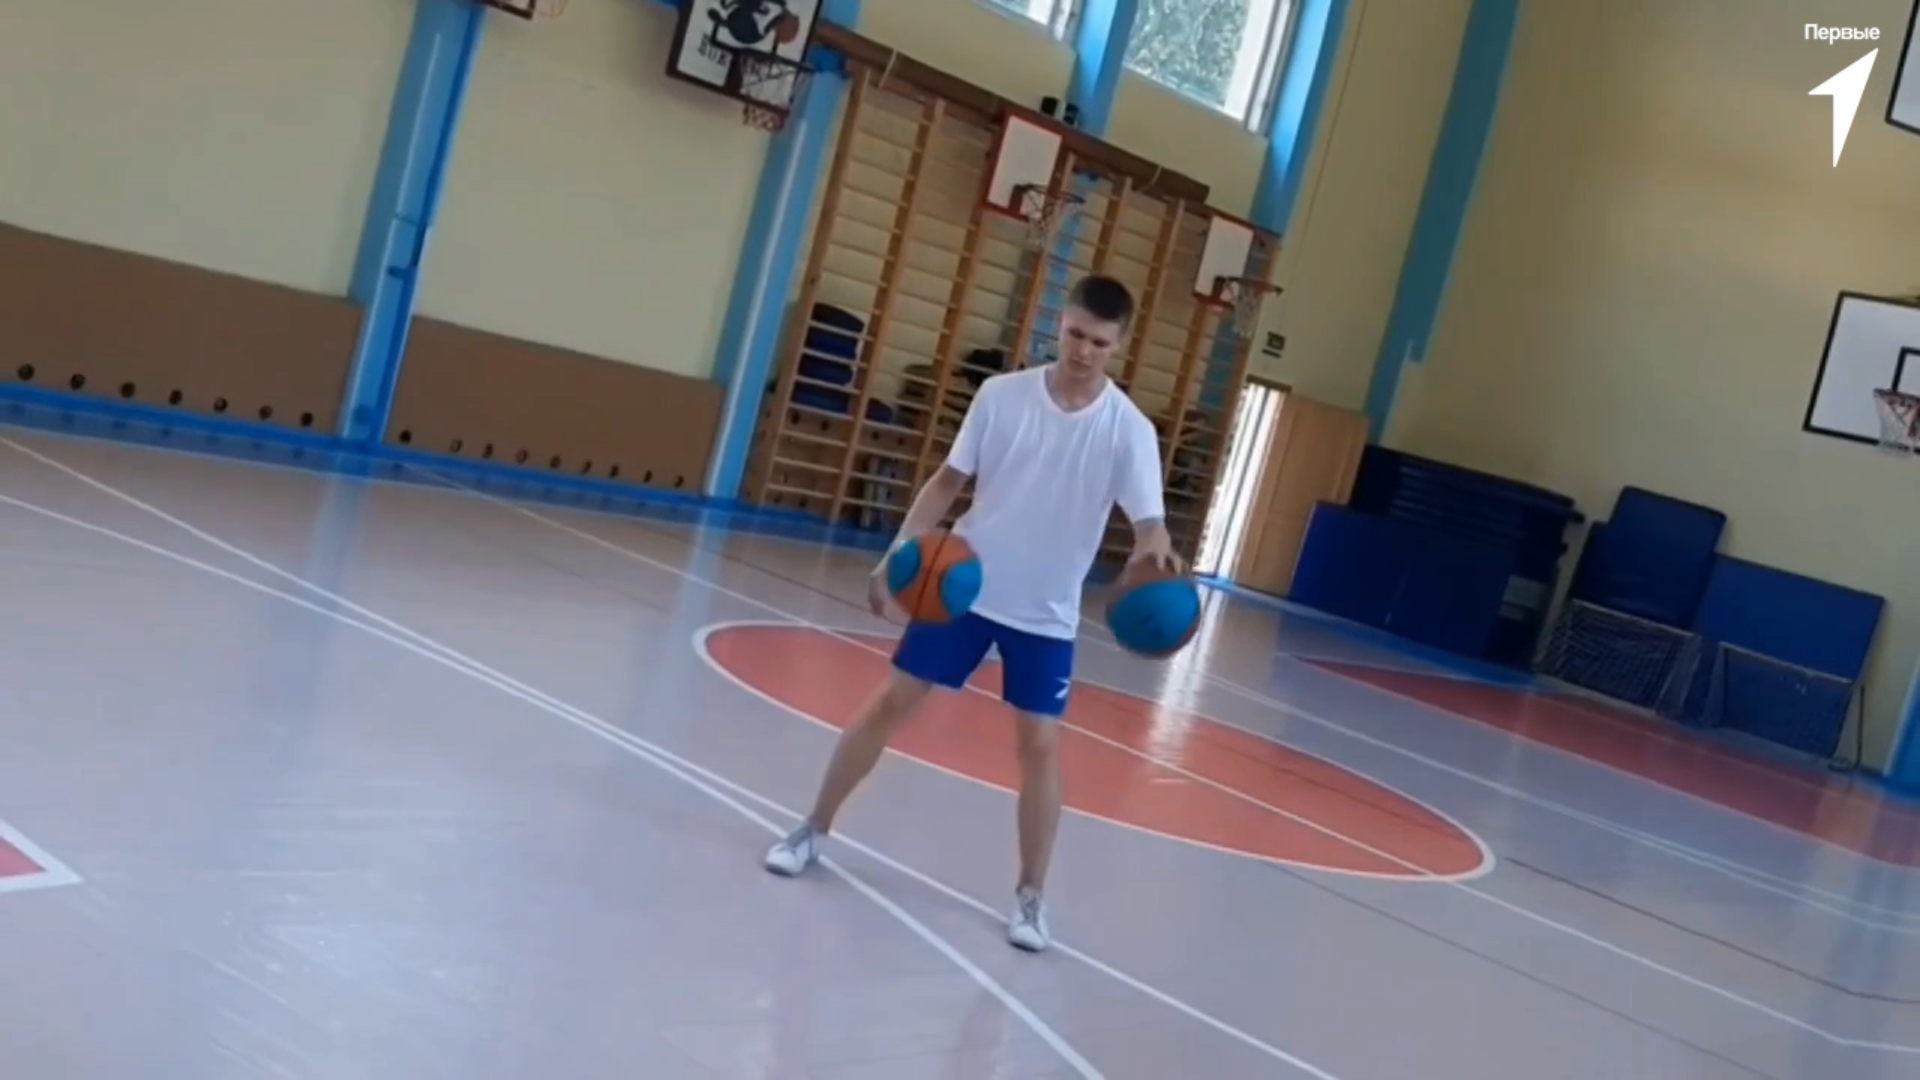 Глеб из Санкт-Петербурга принял Баскетбольный вызов Движения Первых